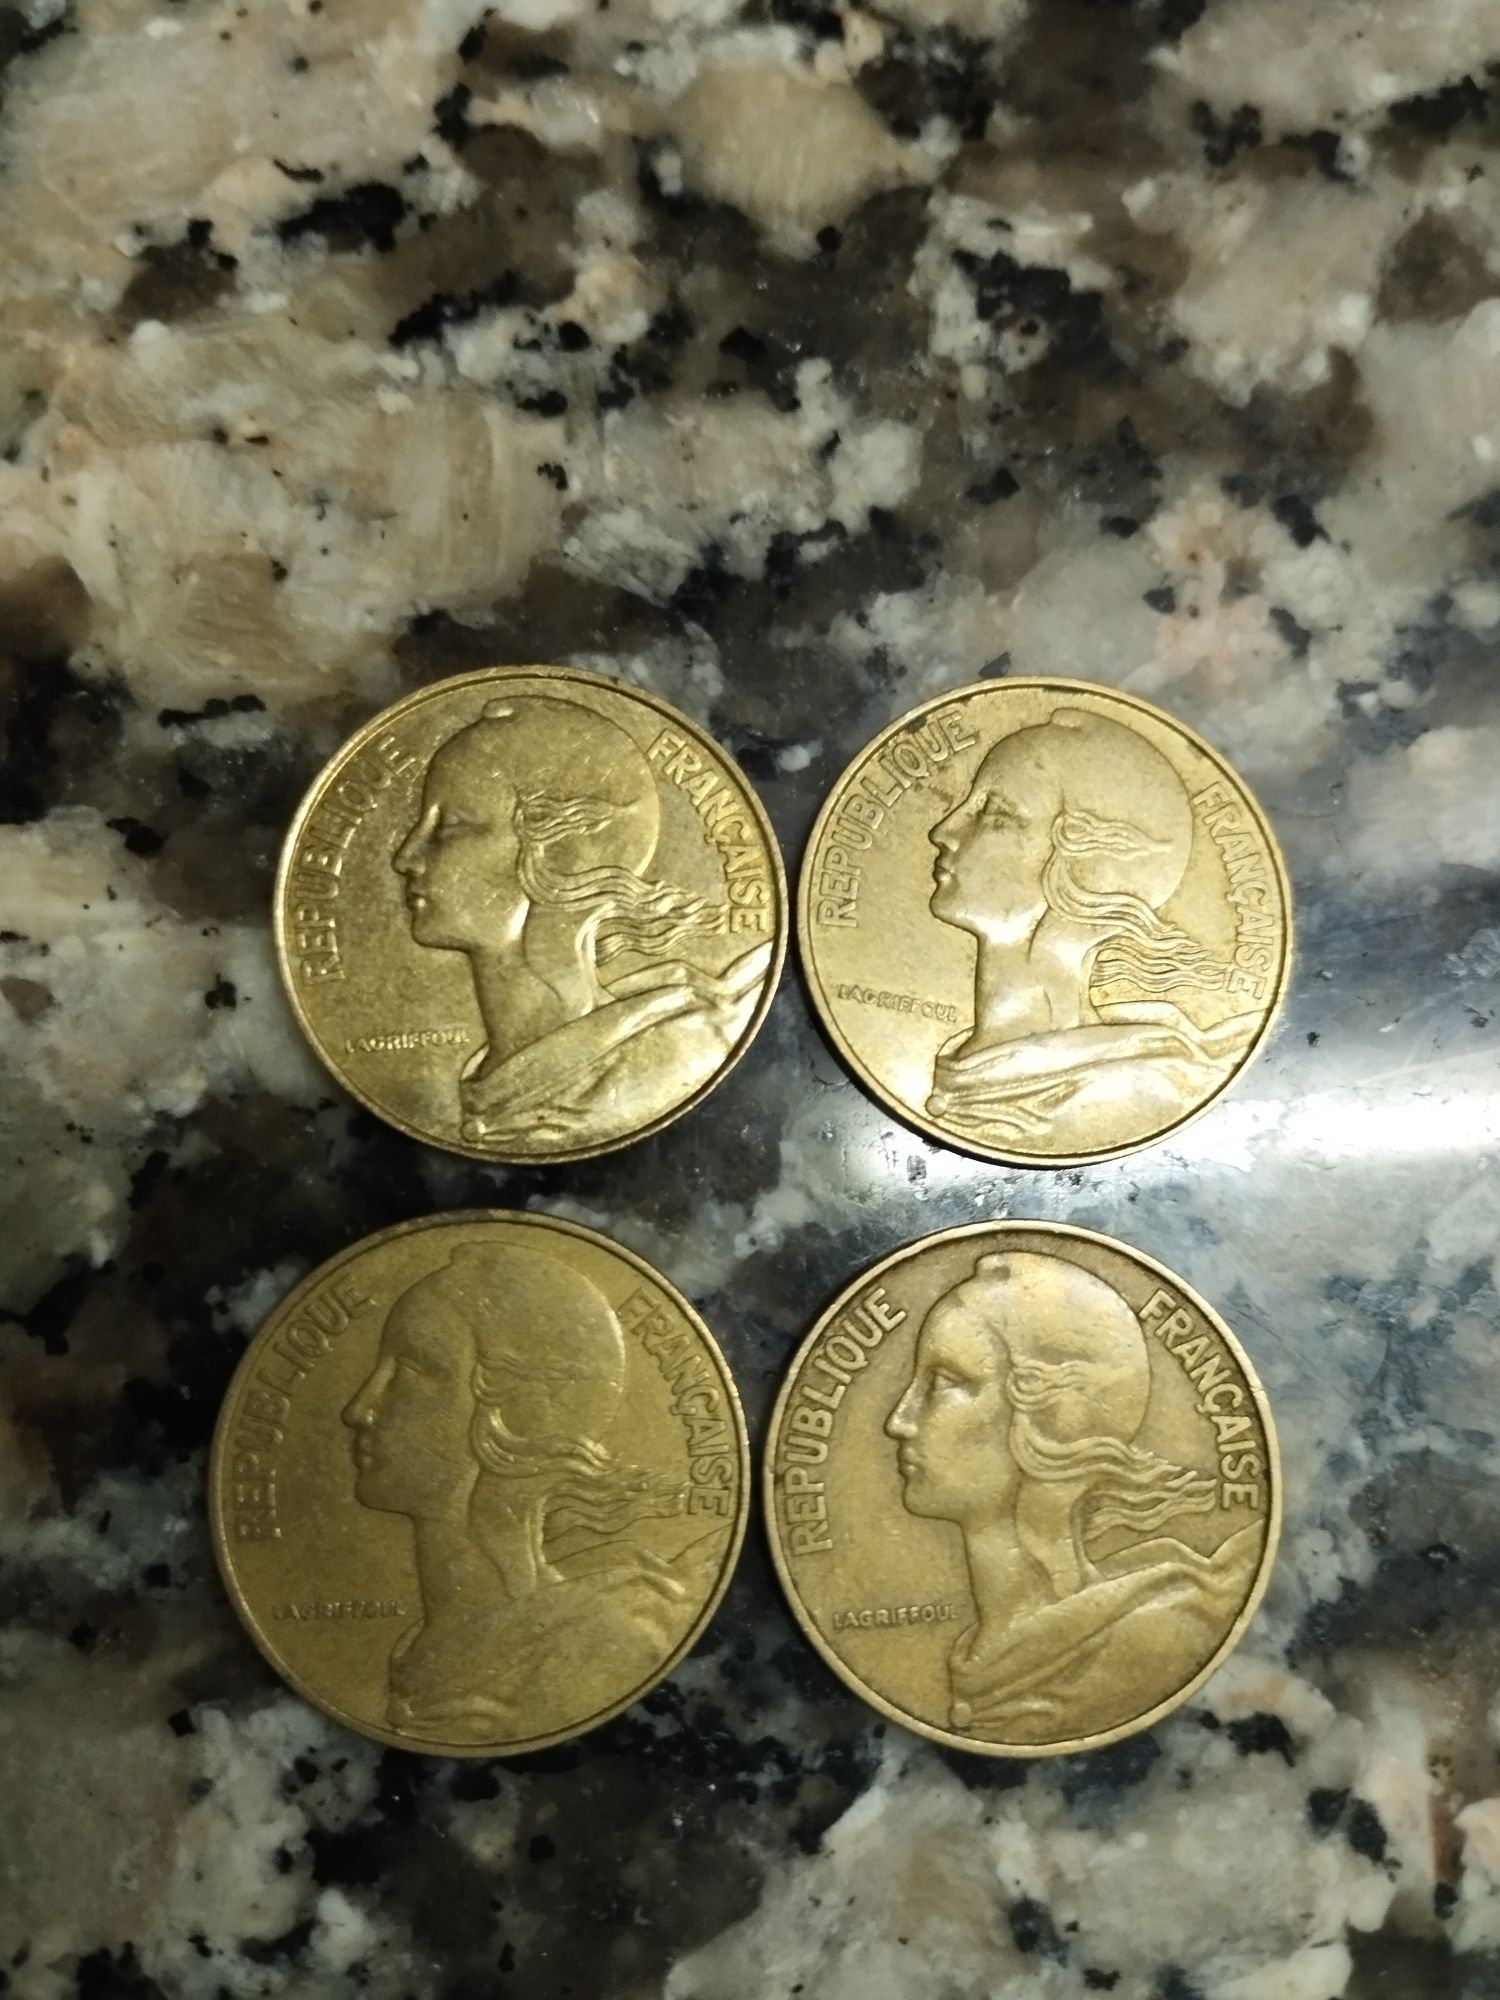 Vendo moedas antigas e raras.